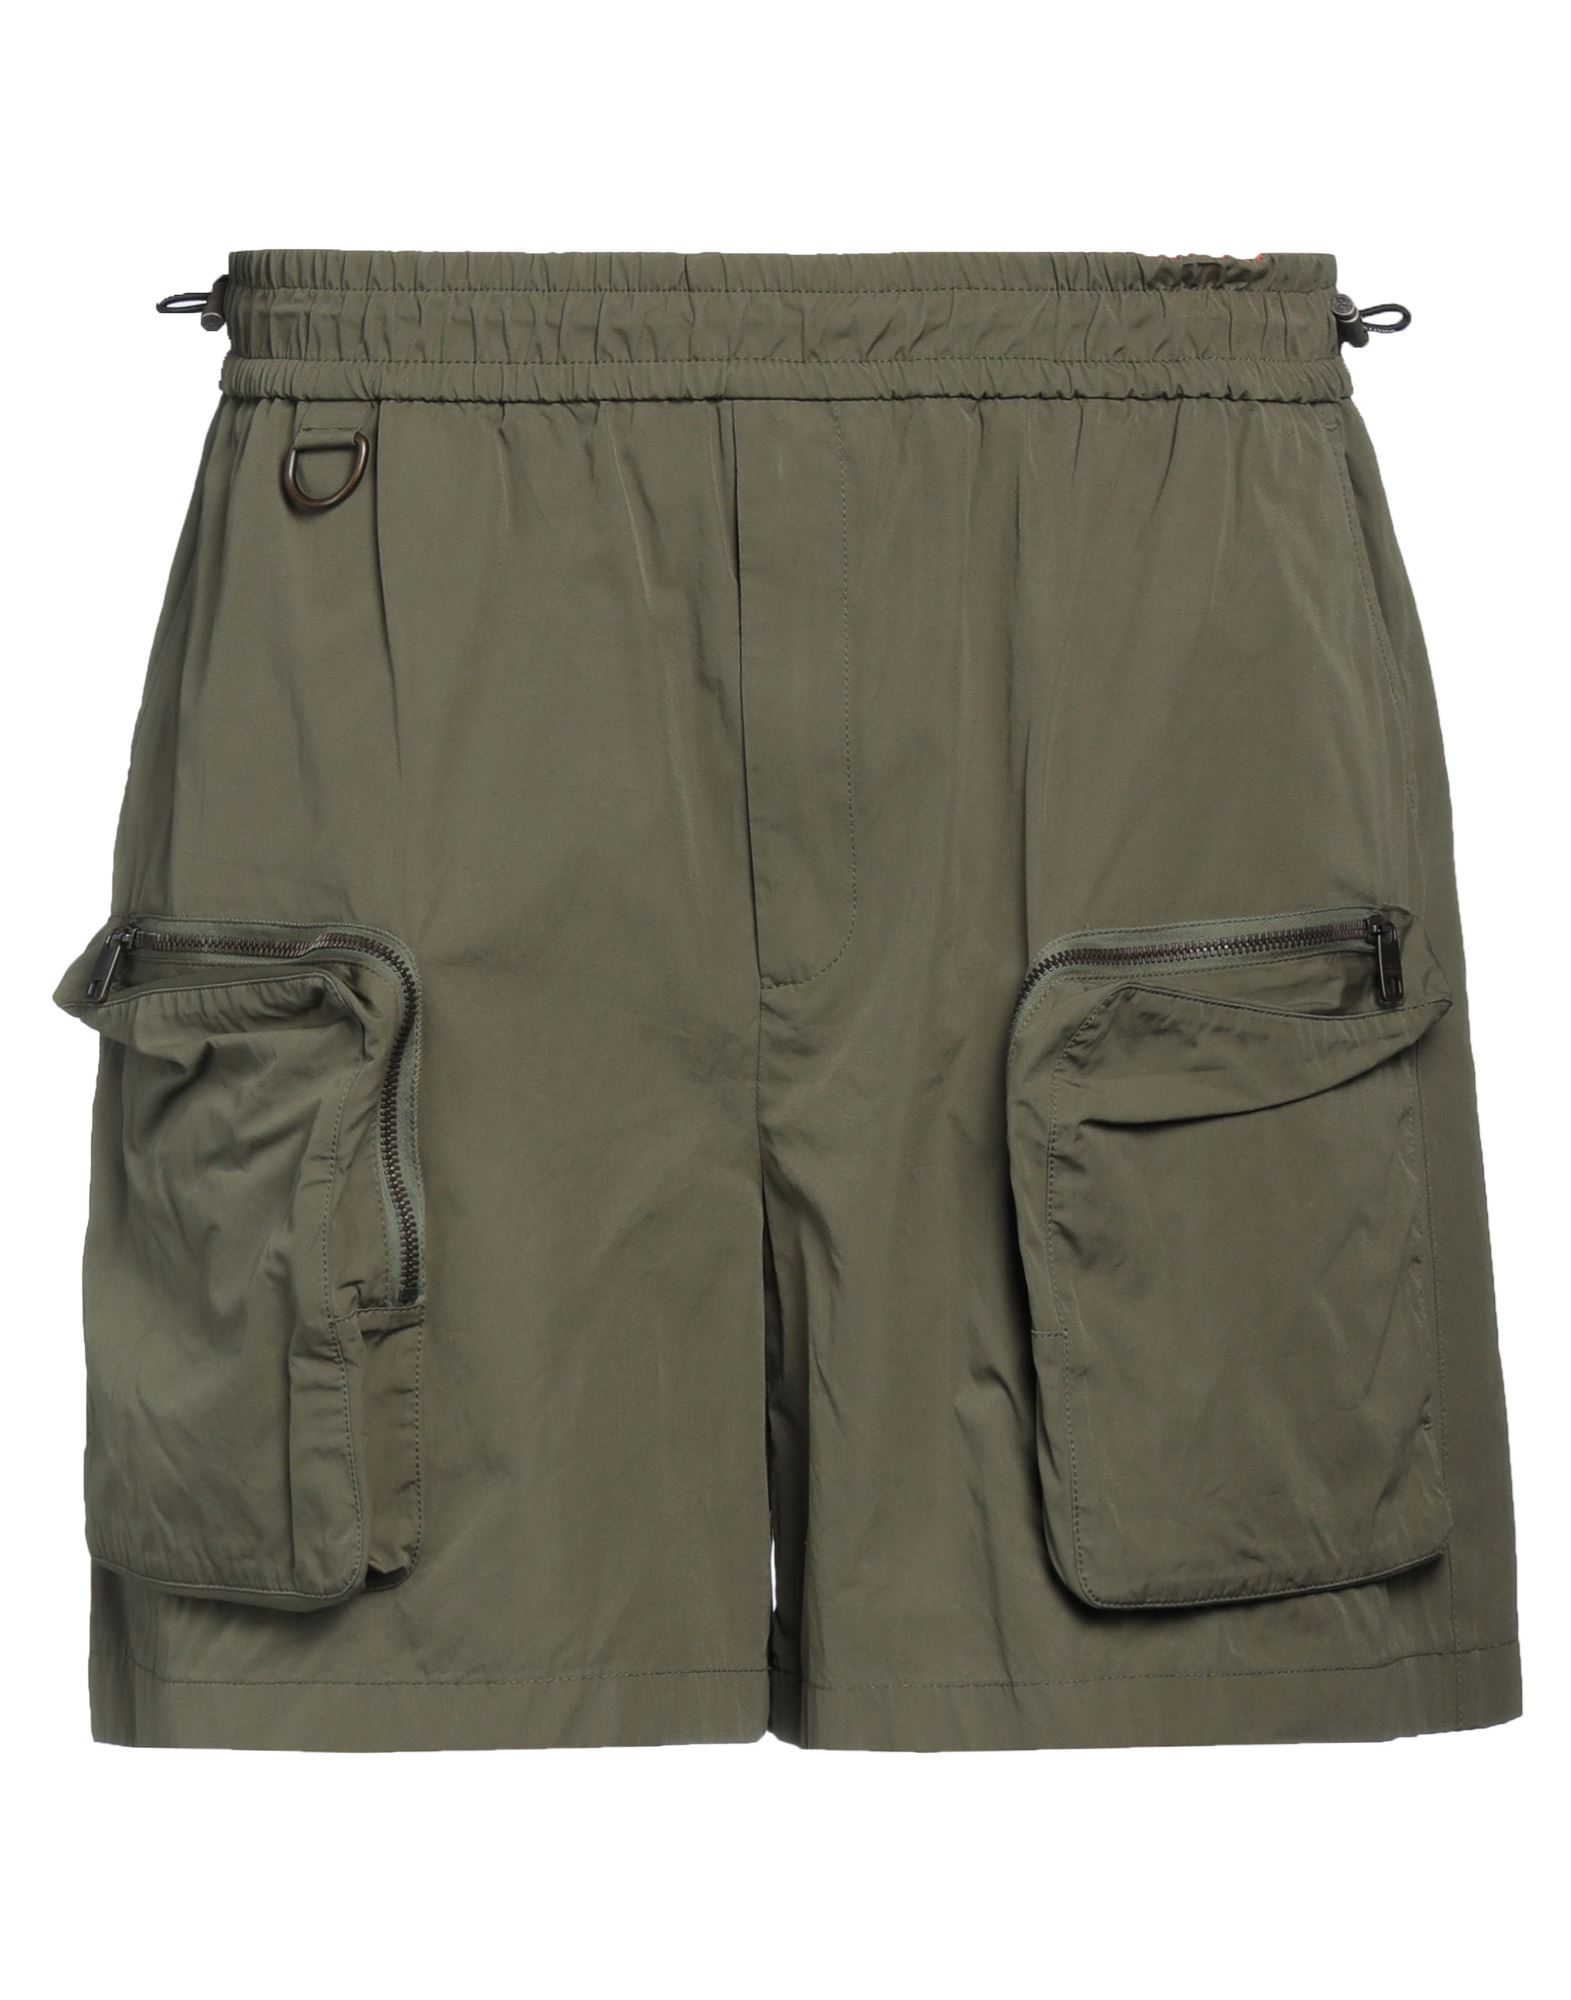 Dolce & Gabbana Man Shorts & Bermuda Shorts Military Green Size 34 Cotton, Polyamide